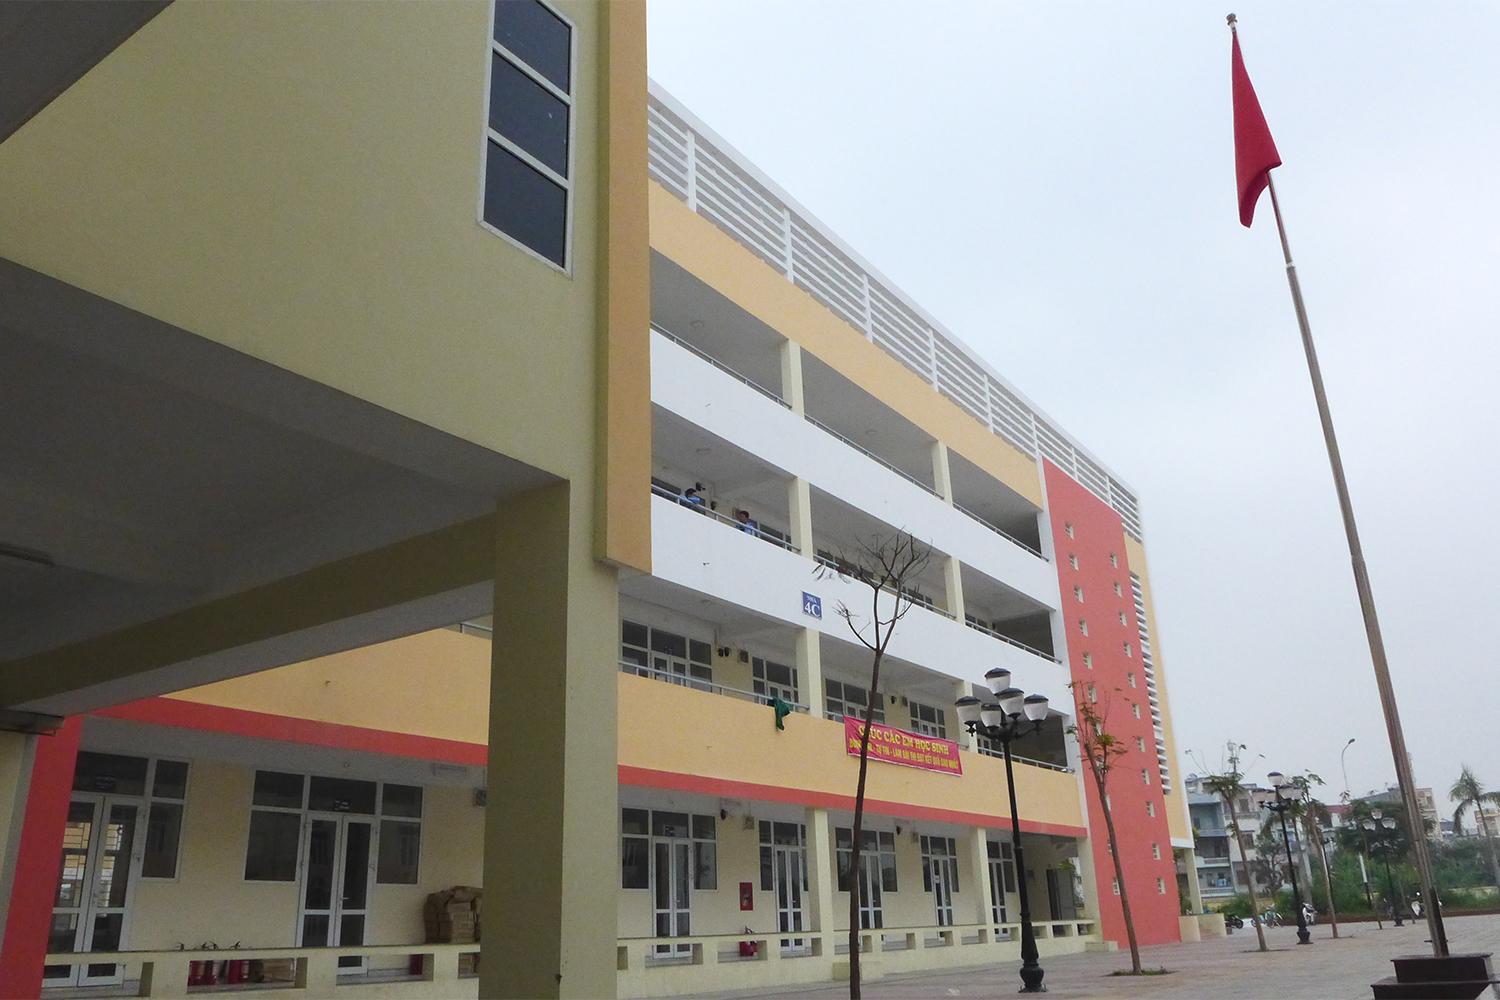 Le lycée accueille 1600 élèves.